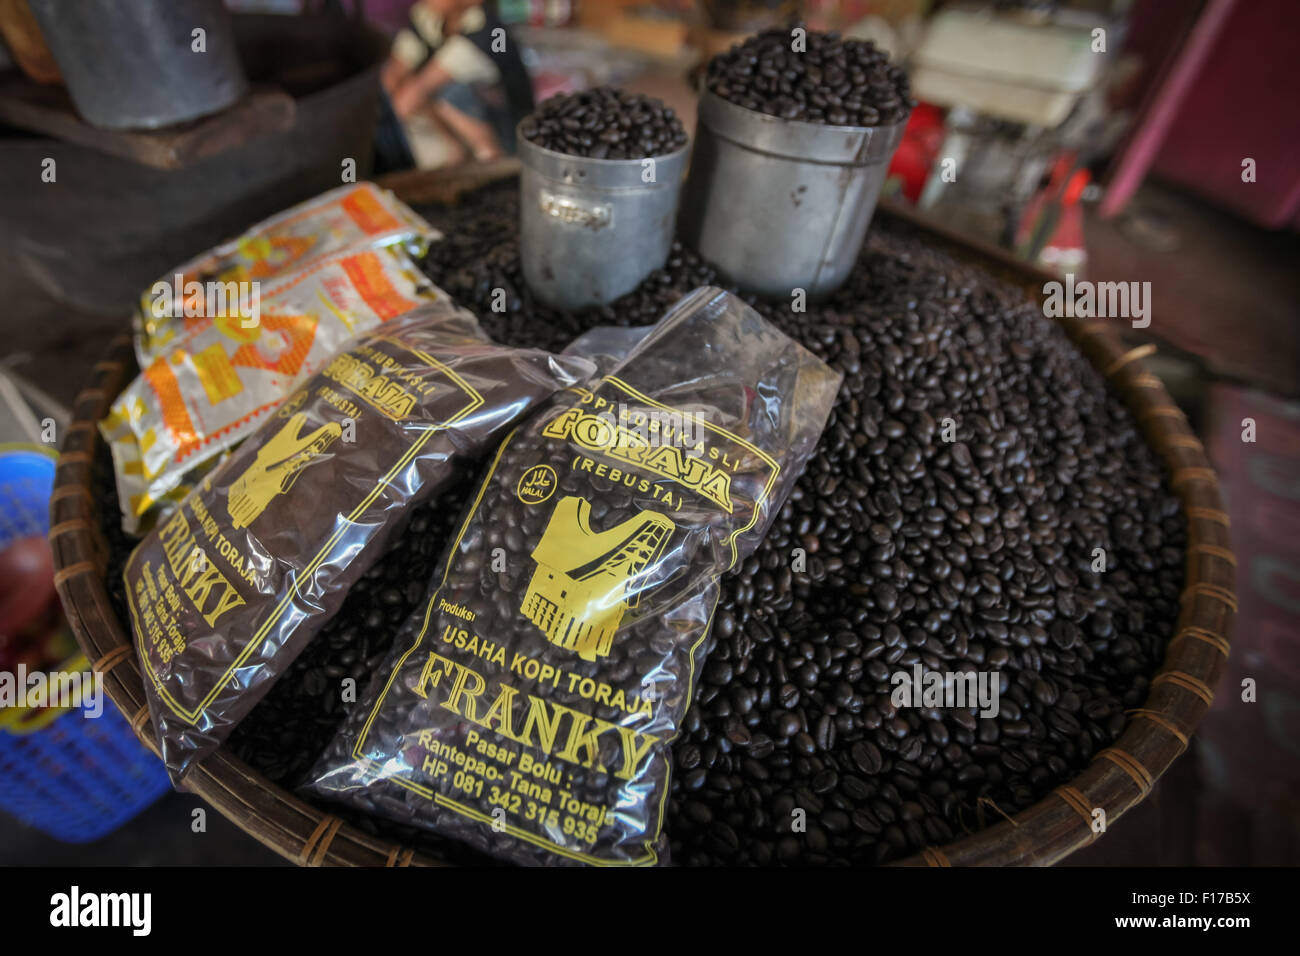 Exemplar von Toraja's arabica-Kaffee, der von einem Gemeinschaftsunternehmen in Toraja, Indonesien, verarbeitet, geröstet, etikettiert und vermarktet wird. Stockfoto